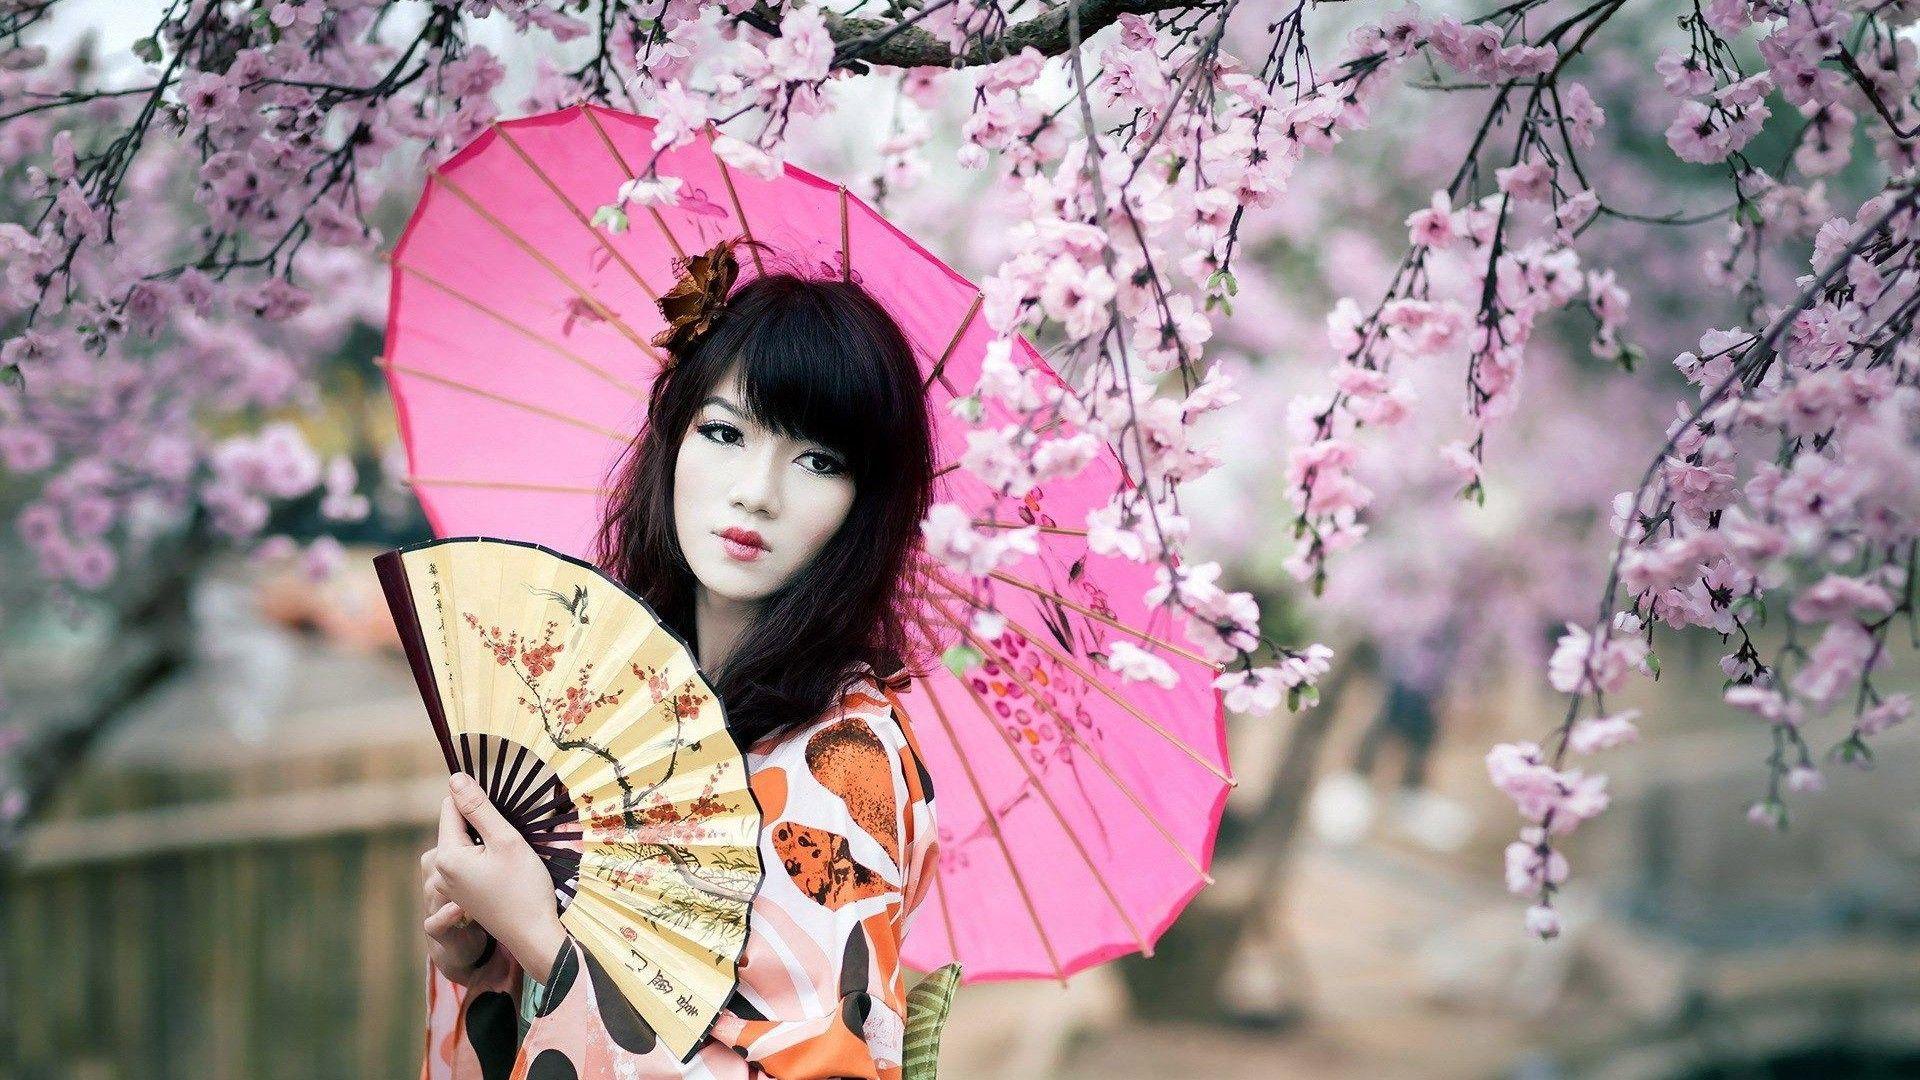 Splendid geisha HD desktop wallpaper, Widescreen, High Definition